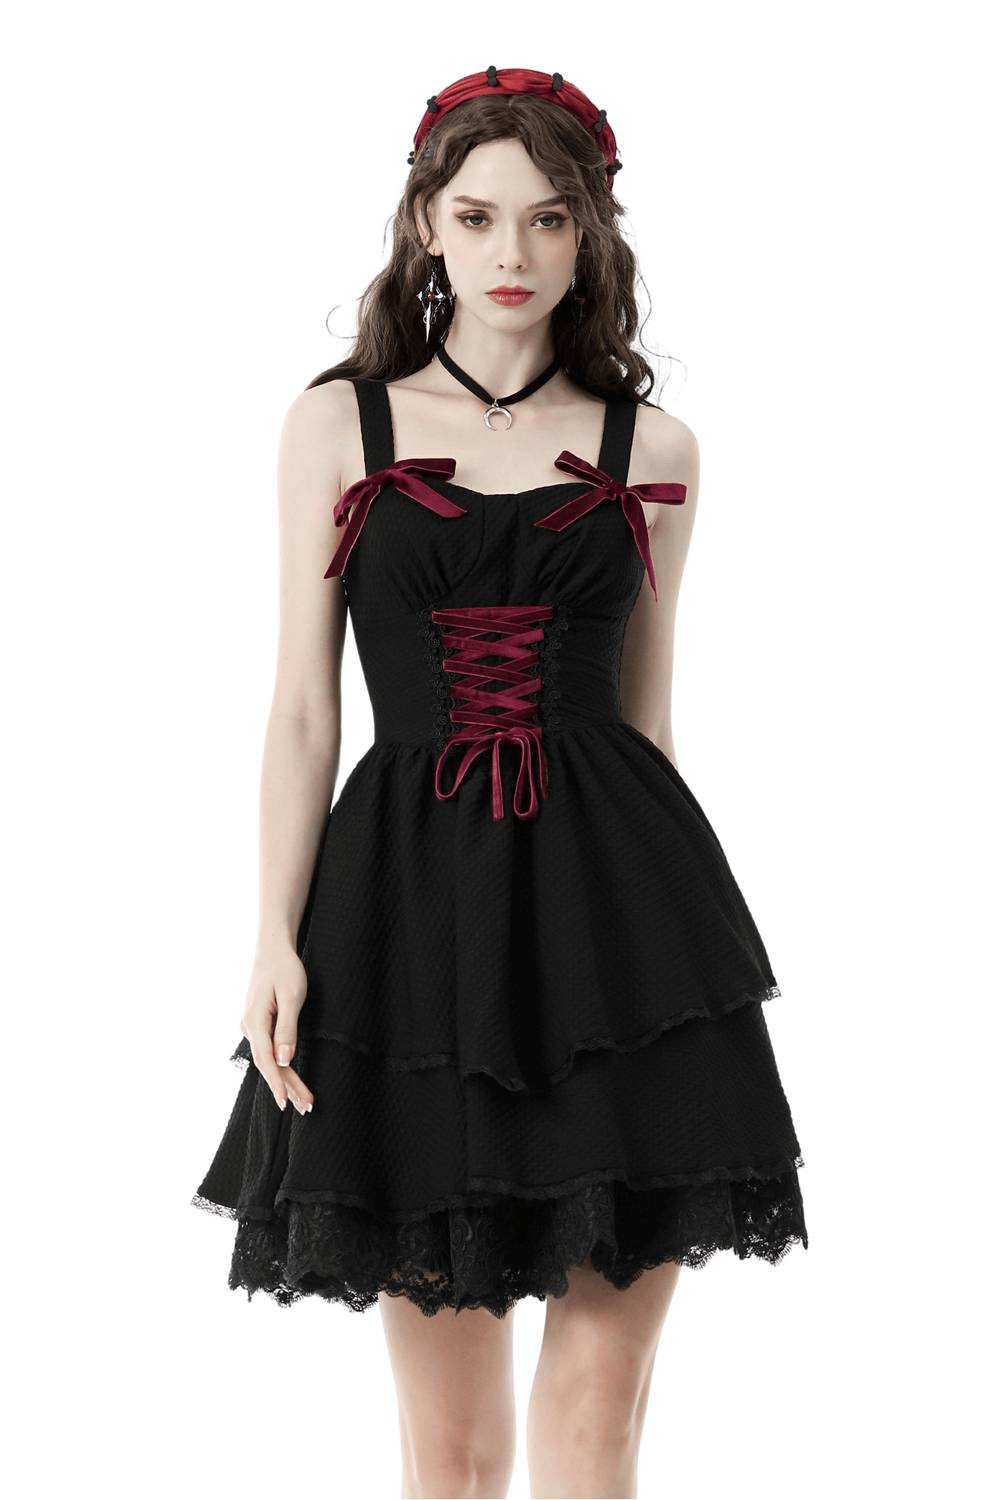 Elegant Black Dress with Velvet Red Ribbon Accents